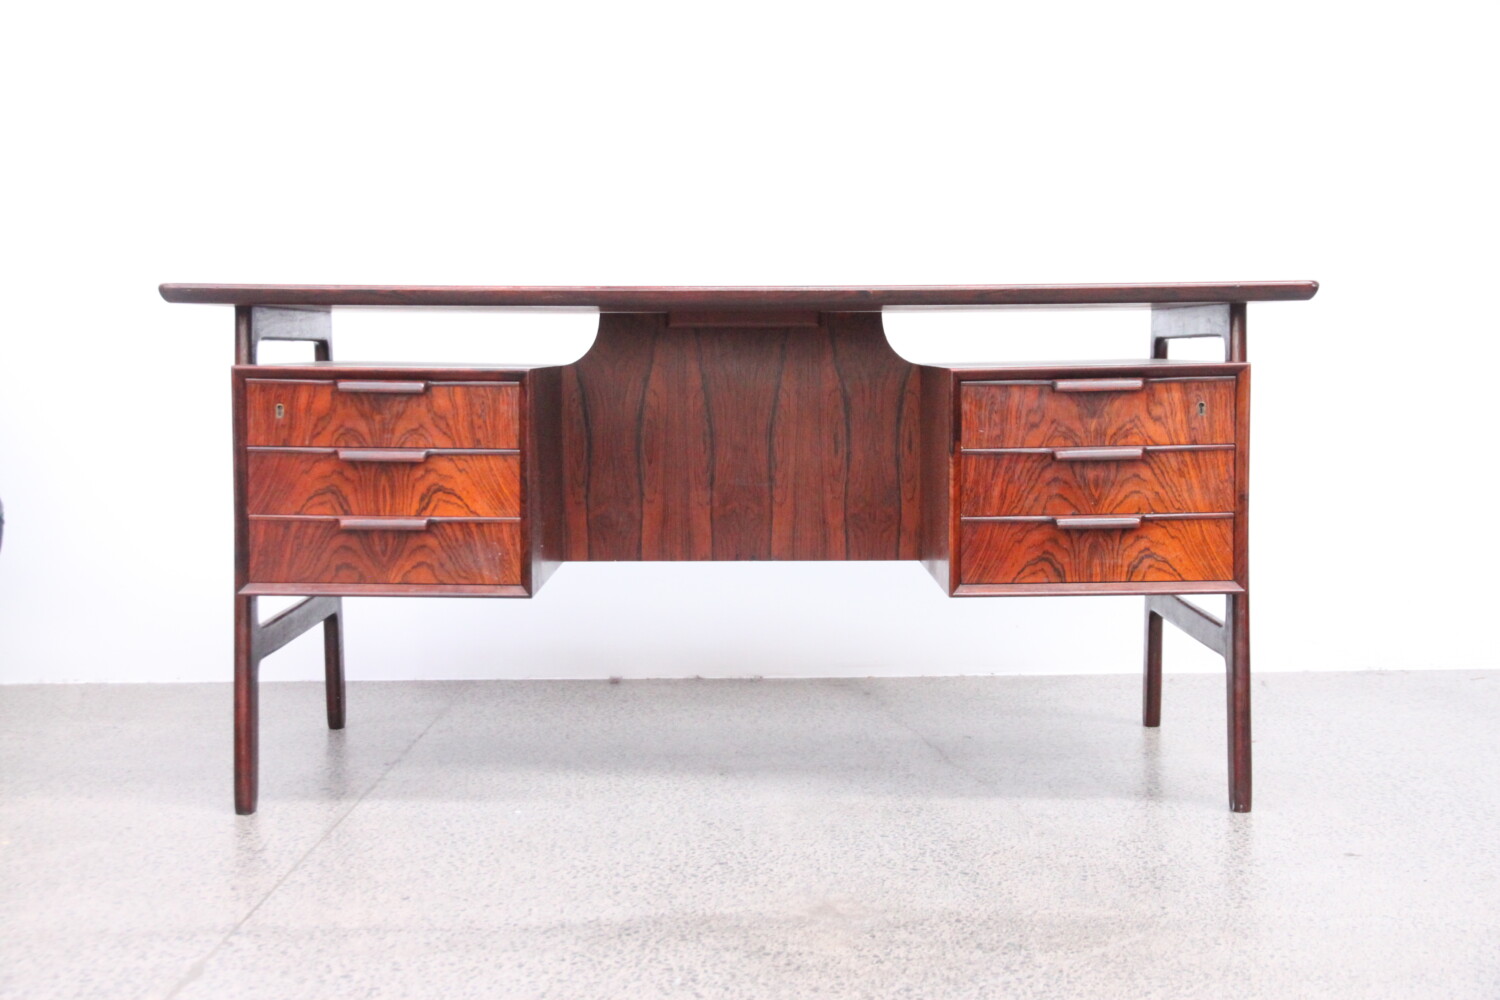 Rosewood Desk by Gunni Omann model 75 sold